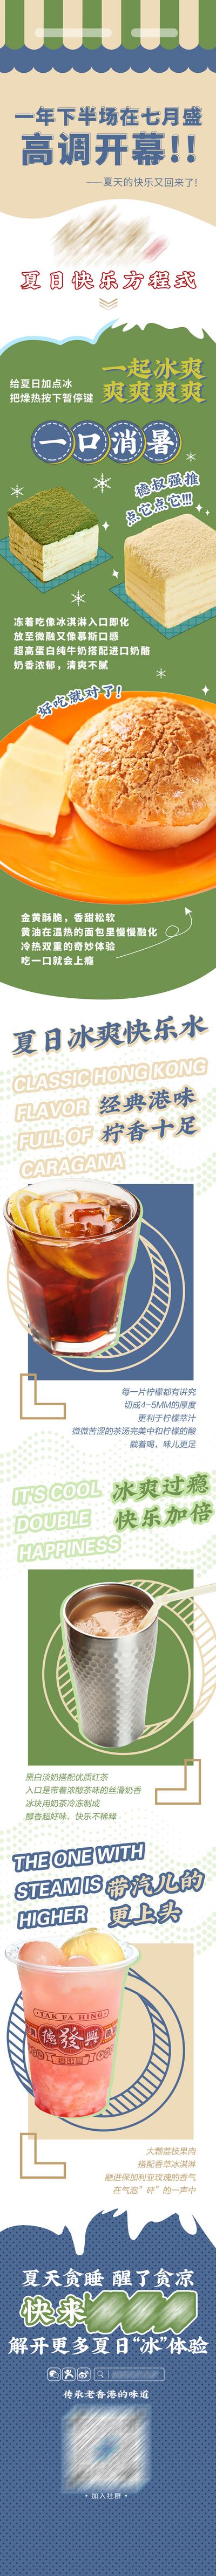 南门网 专题设计 长图 奶茶 饮品 甜品 蛋糕 港风